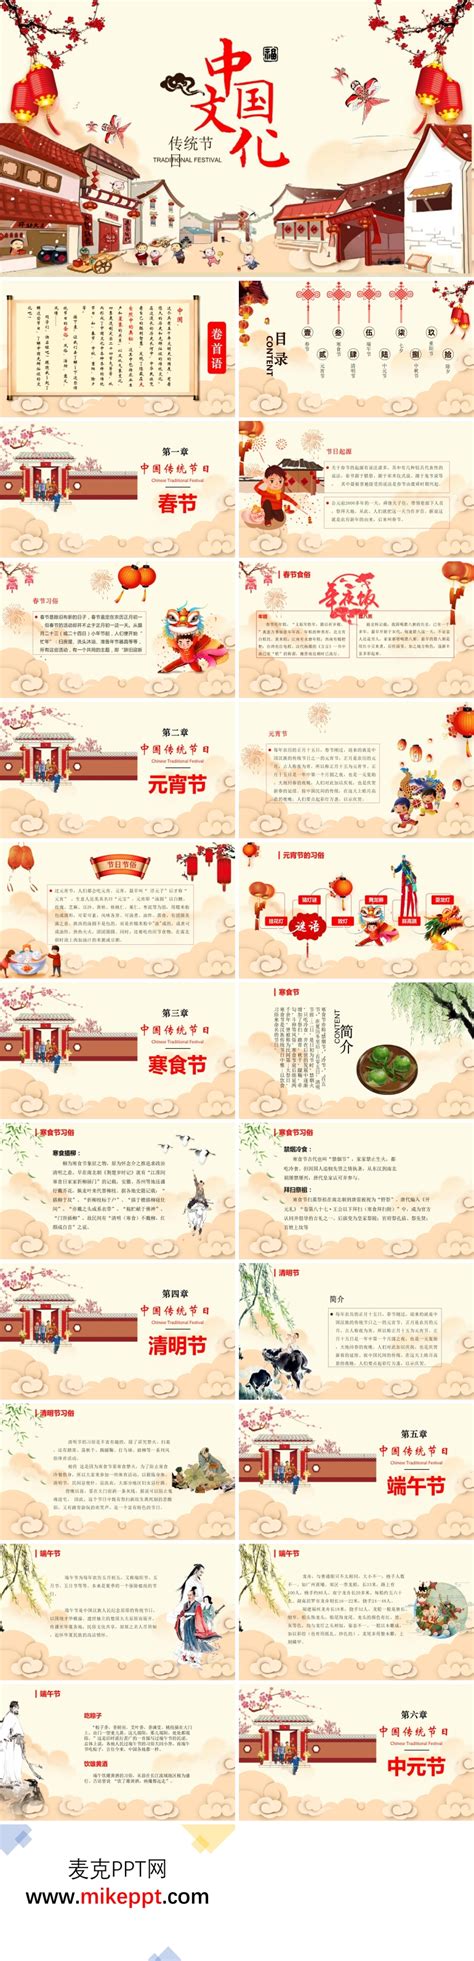 中国传统节日介绍ppt-麦克PPT网